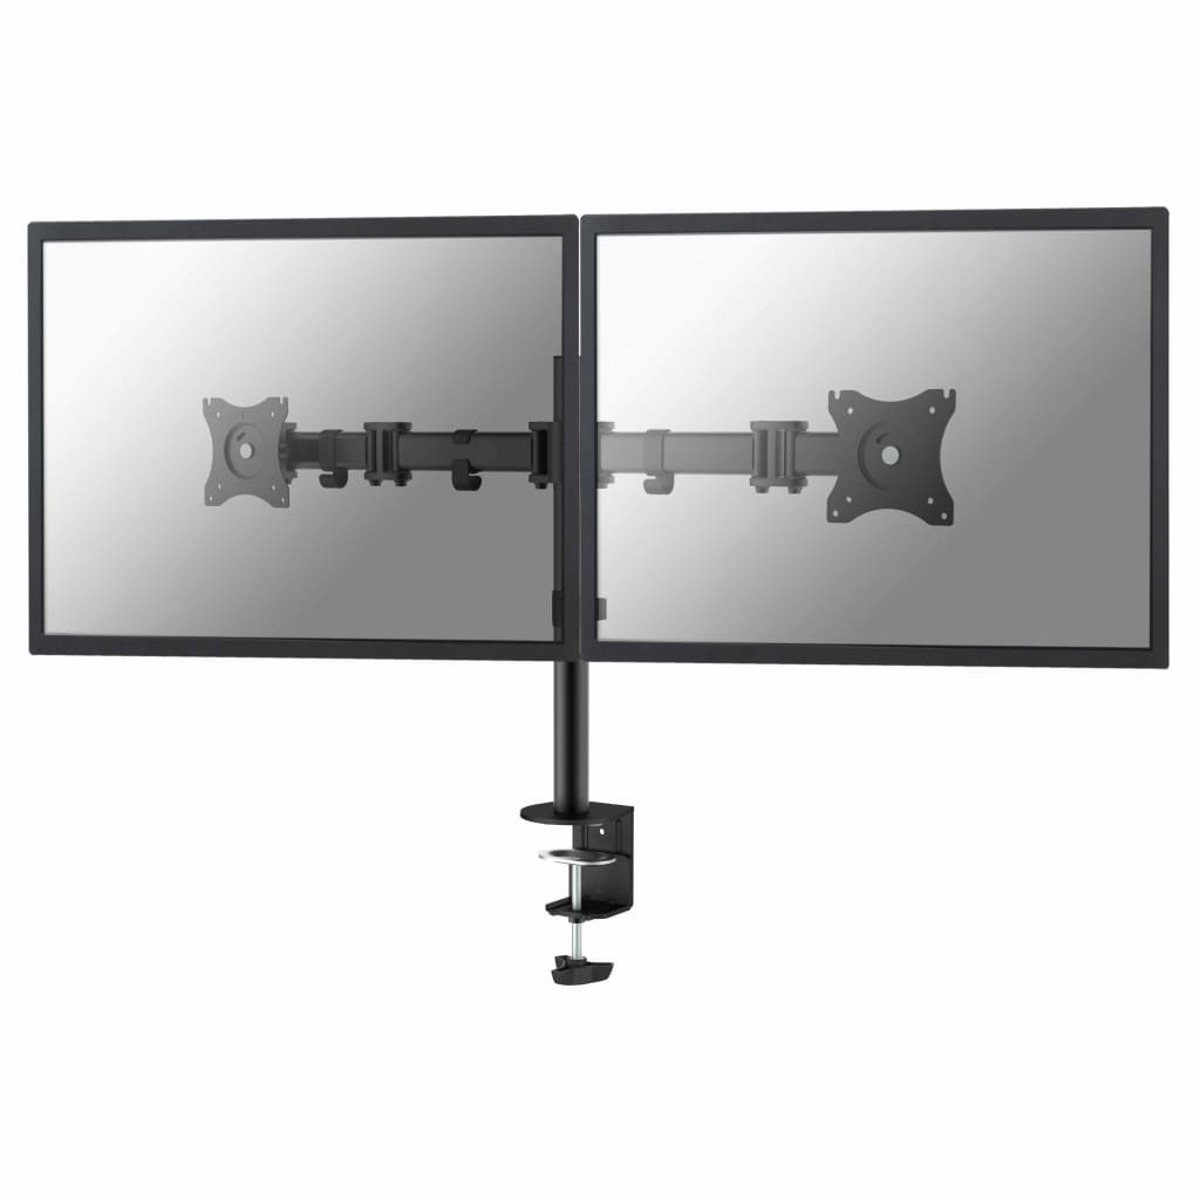 Black Flachbildschirm-Tischhalterung, 420200 NEWSTAR